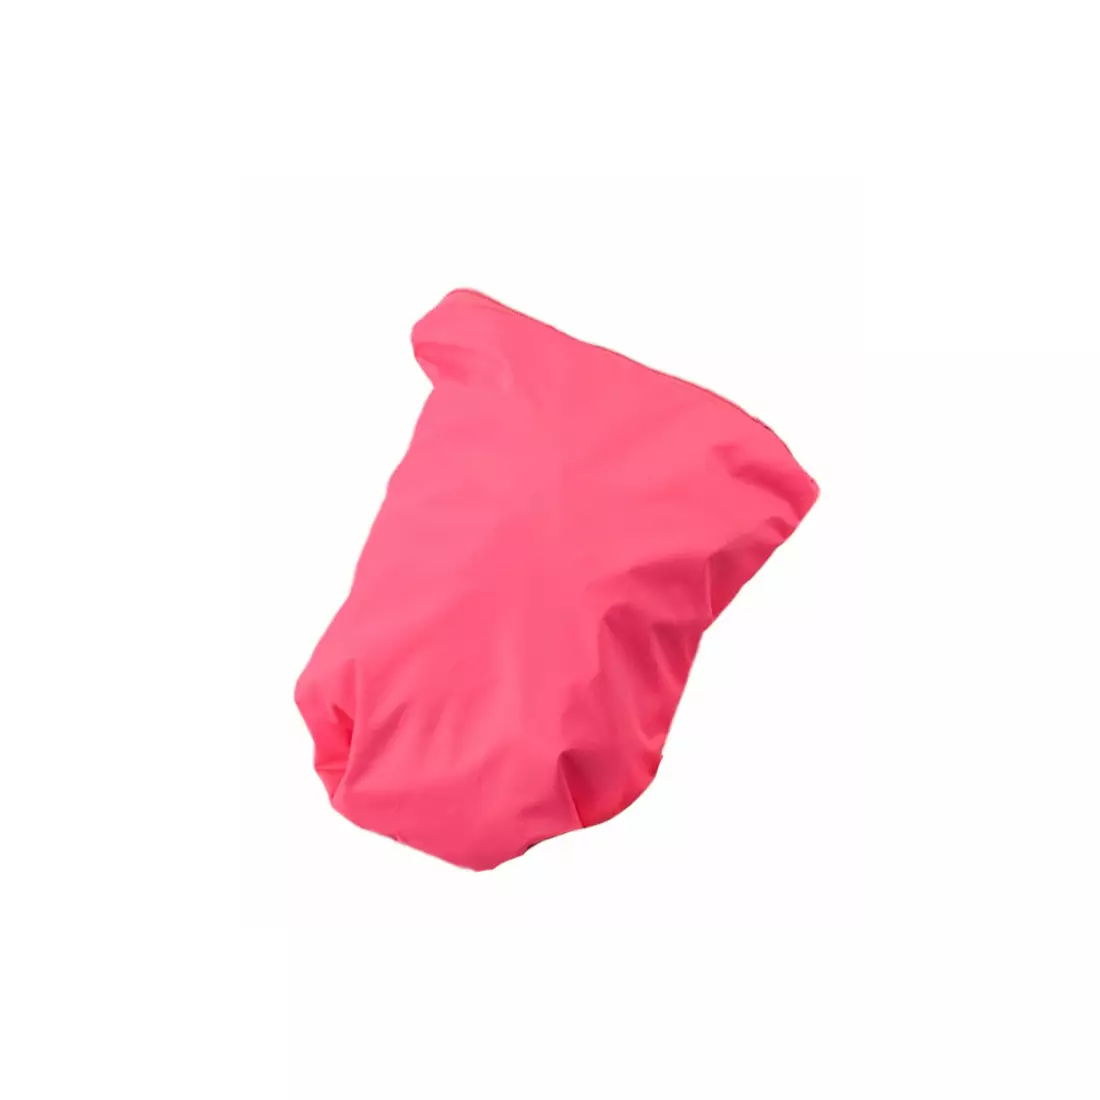 DARE2B Jachetă de ploaie pentru ciclism pentru femei Evident DWW096-72P, culoare: roz